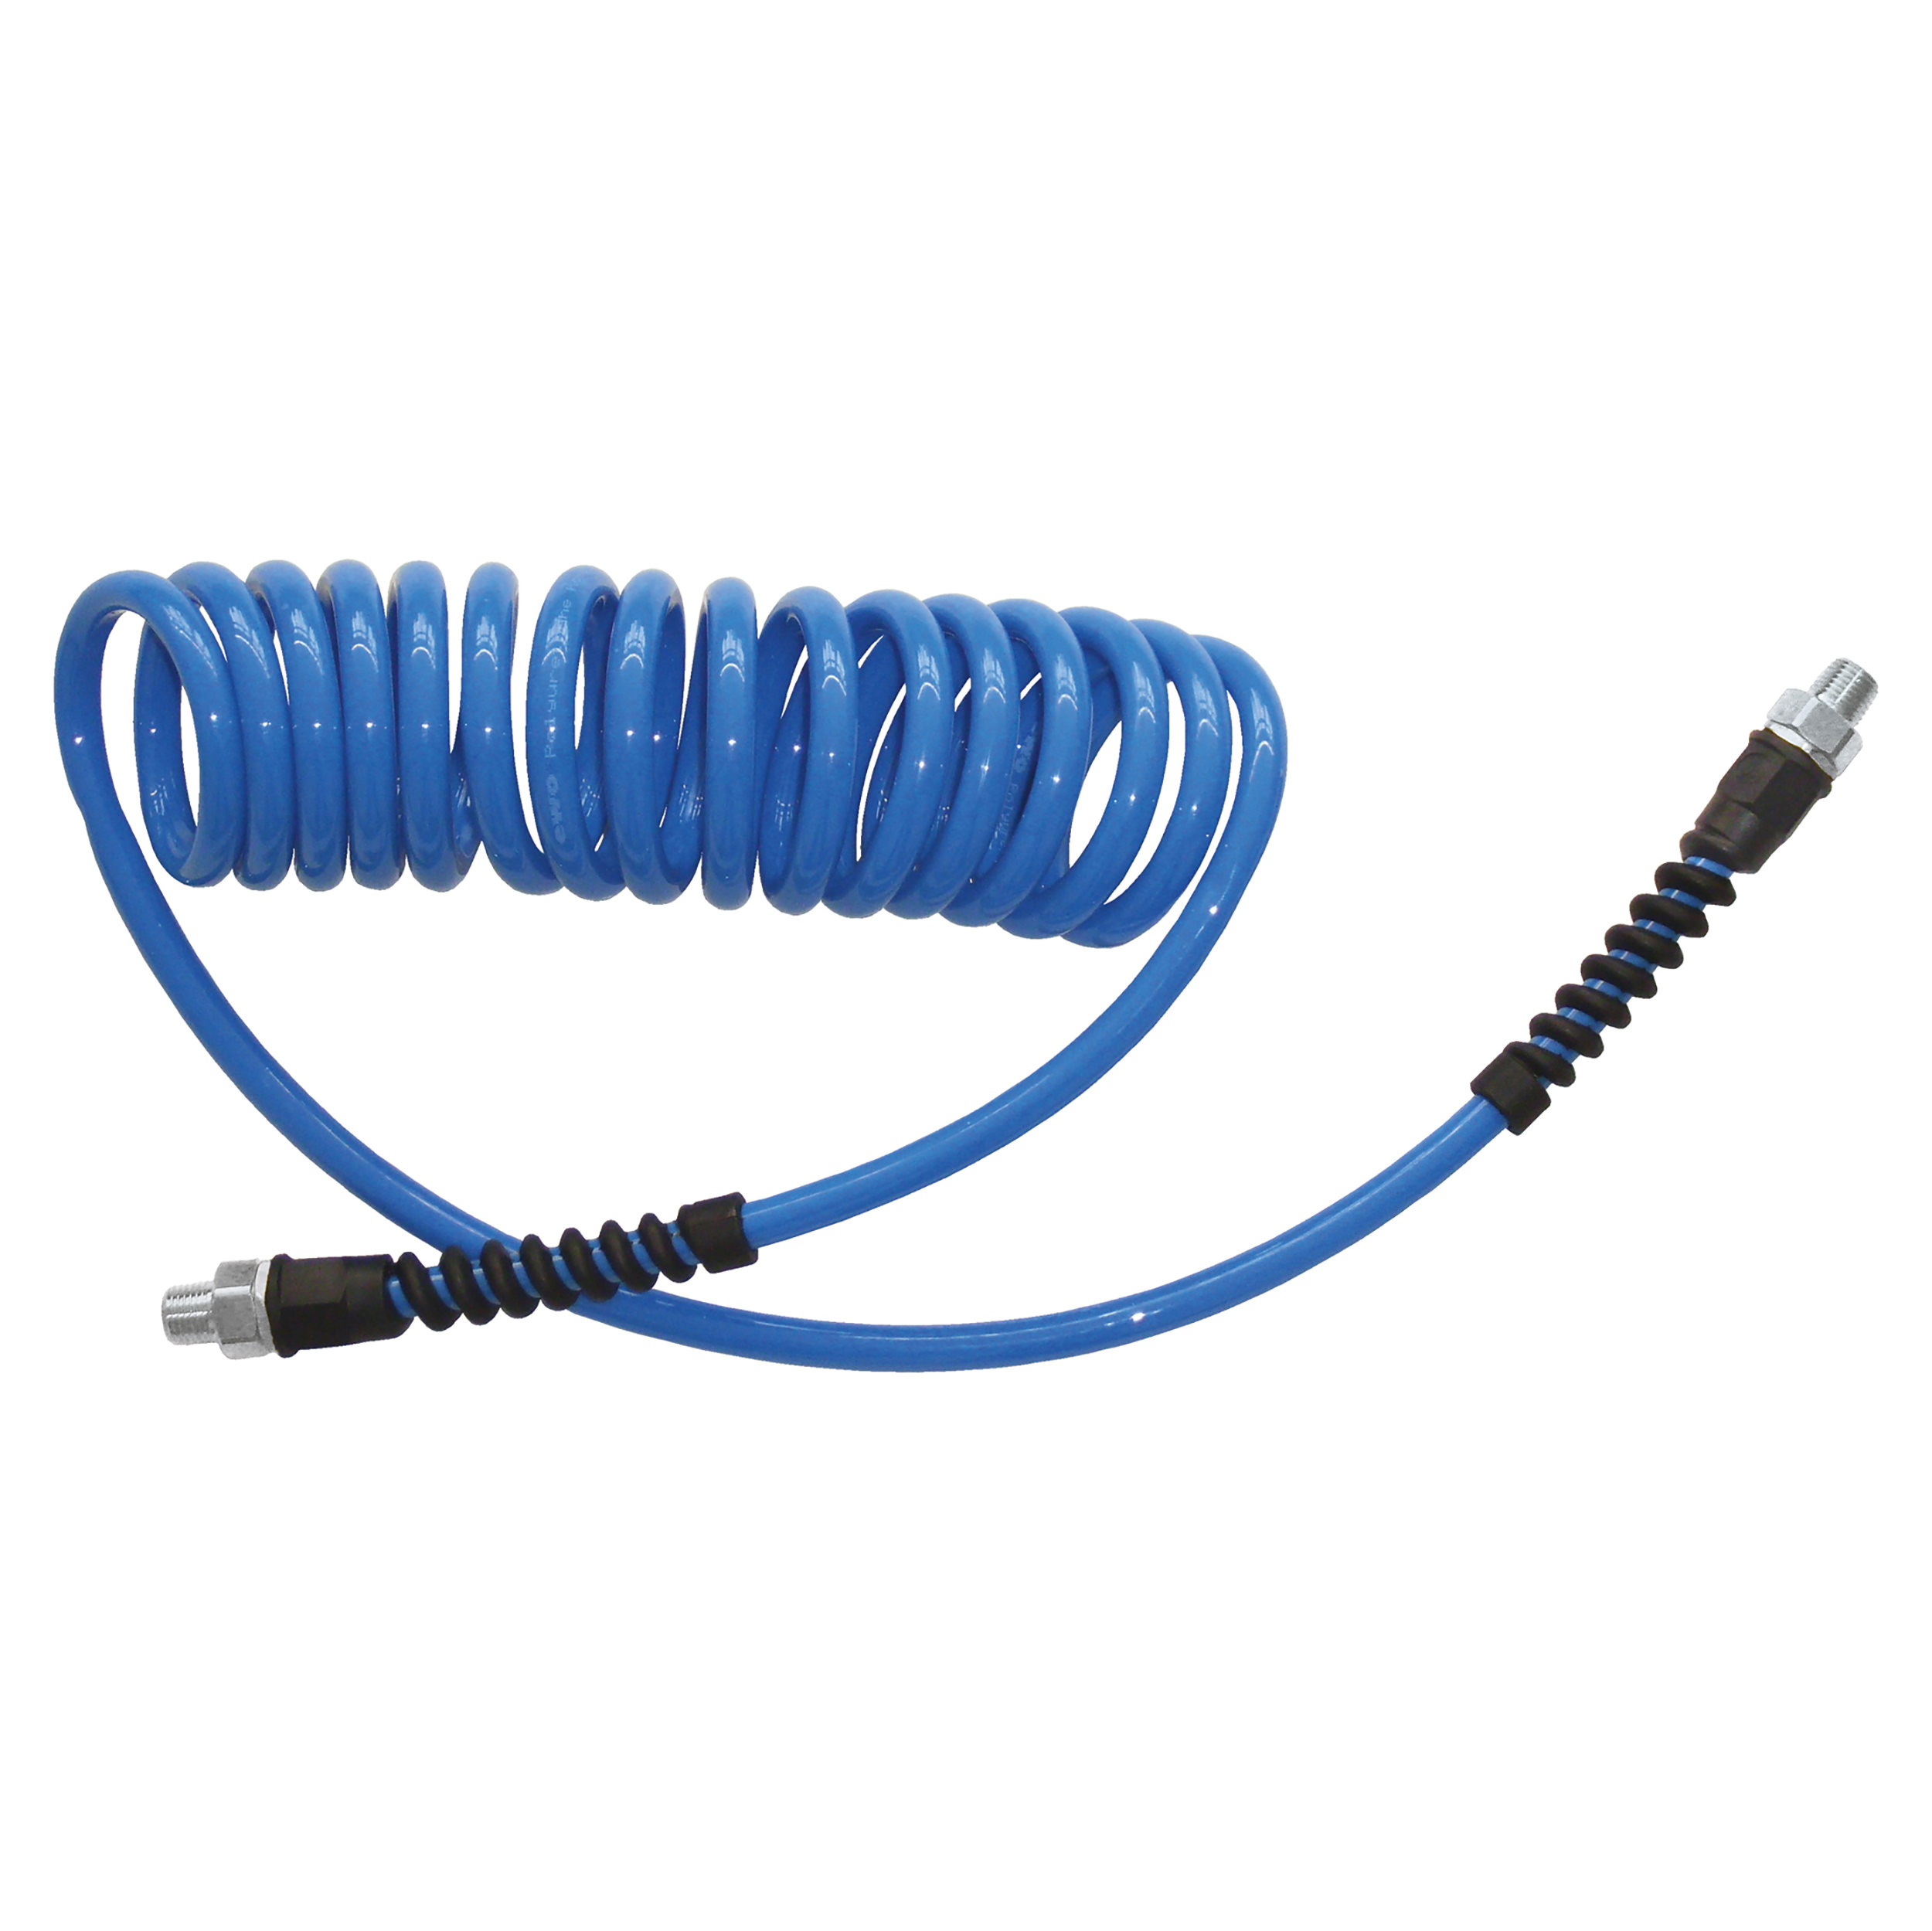 Spiral hose (PU), connection thread (zinc-plated brass)